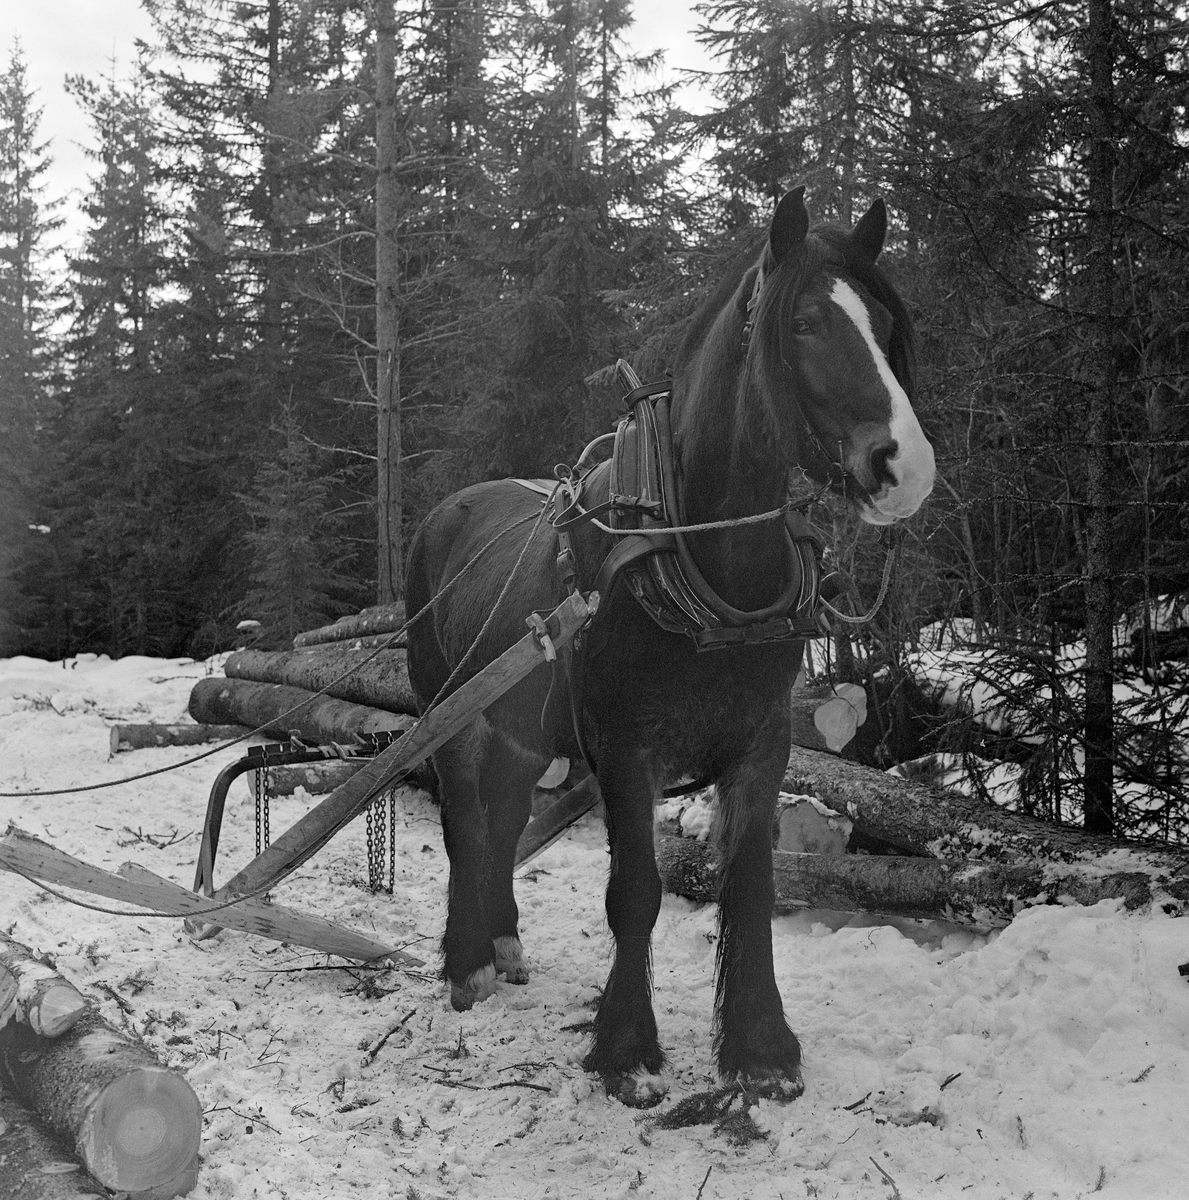 Jørgen Larsens skogshest «Blessen», fotogarefrt under lunning i Stavåsen i Elverum, Hedmark, vinteren 1971.  Blessen hadde arbeidssele. Det var seletøyet som gjorde det mulig å trekke, bremse og rygge med hesten. Blessen hadde bogtresele med ei stoppet ringpute, som var tredd over hodet på dyret slik at den ligger an mot nakken og bringen på hesten.  Derfra gikk det kraftige drotter (draglær) bakover mot orringen, som  var plassert i krysningspunktet mellom bukgjorden, bærereimene fra høvret og bakselen.  Bakselen, som ble ført horisontalt fra orringene bakover sidene og rundt øvre del av lårene, var nødvendig for at hesten skulle kunne «holde igjen» i utforbakker. Hesten ble styrt ved hjelp av tømmer, som er forankret i et munnbitt. Tømmene ble ført gjennom ringene på høvret, og de var så lange at kjørekaren kunne betjene dem fra en posisjon bak bøyledraget.  Bøyledraget besto av dragarmer av tre med ei omvendt U-formet jernbøyle som «bank» (forbindelsesledd) mellom de bakre delene av trekkstengene.  Disse er beslått på undersida, slik at de fungerte som meier. Jernbøyla var utstyrt med jernlenker (snarekjetting) som stokkendene ble stroppet i, slik at det bare var bakendene som ble slept på bakken.  Bøyledraget ble vanlig i norsk skogbruk i åra etter 2. verdenskrig, fortrinnsvis til lunning (samling av stokker på et hogstfelt i ei «lunne», der tømmeret seinere kunne hentes med en slede som hadde større lastekapasitet og kjøres til fløtingsvassdrag eller bilveg).